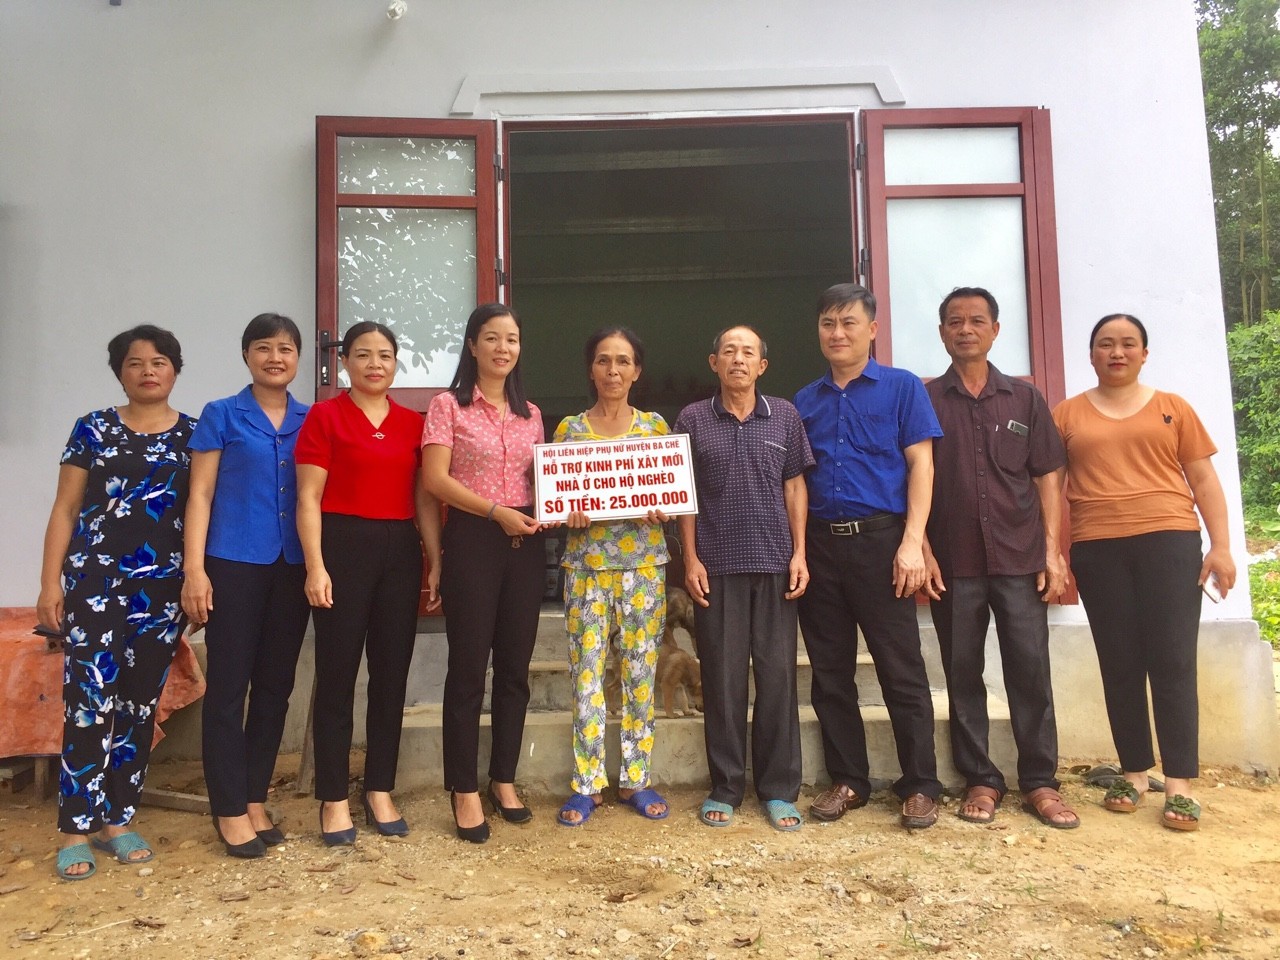 Hội LHPN huyện Ba Chẽ hỗ trợ kinh phí xây mới nhà ở cho hội viên phụ nữ nghèo tại khu 5, thị trấn Ba Chẽ